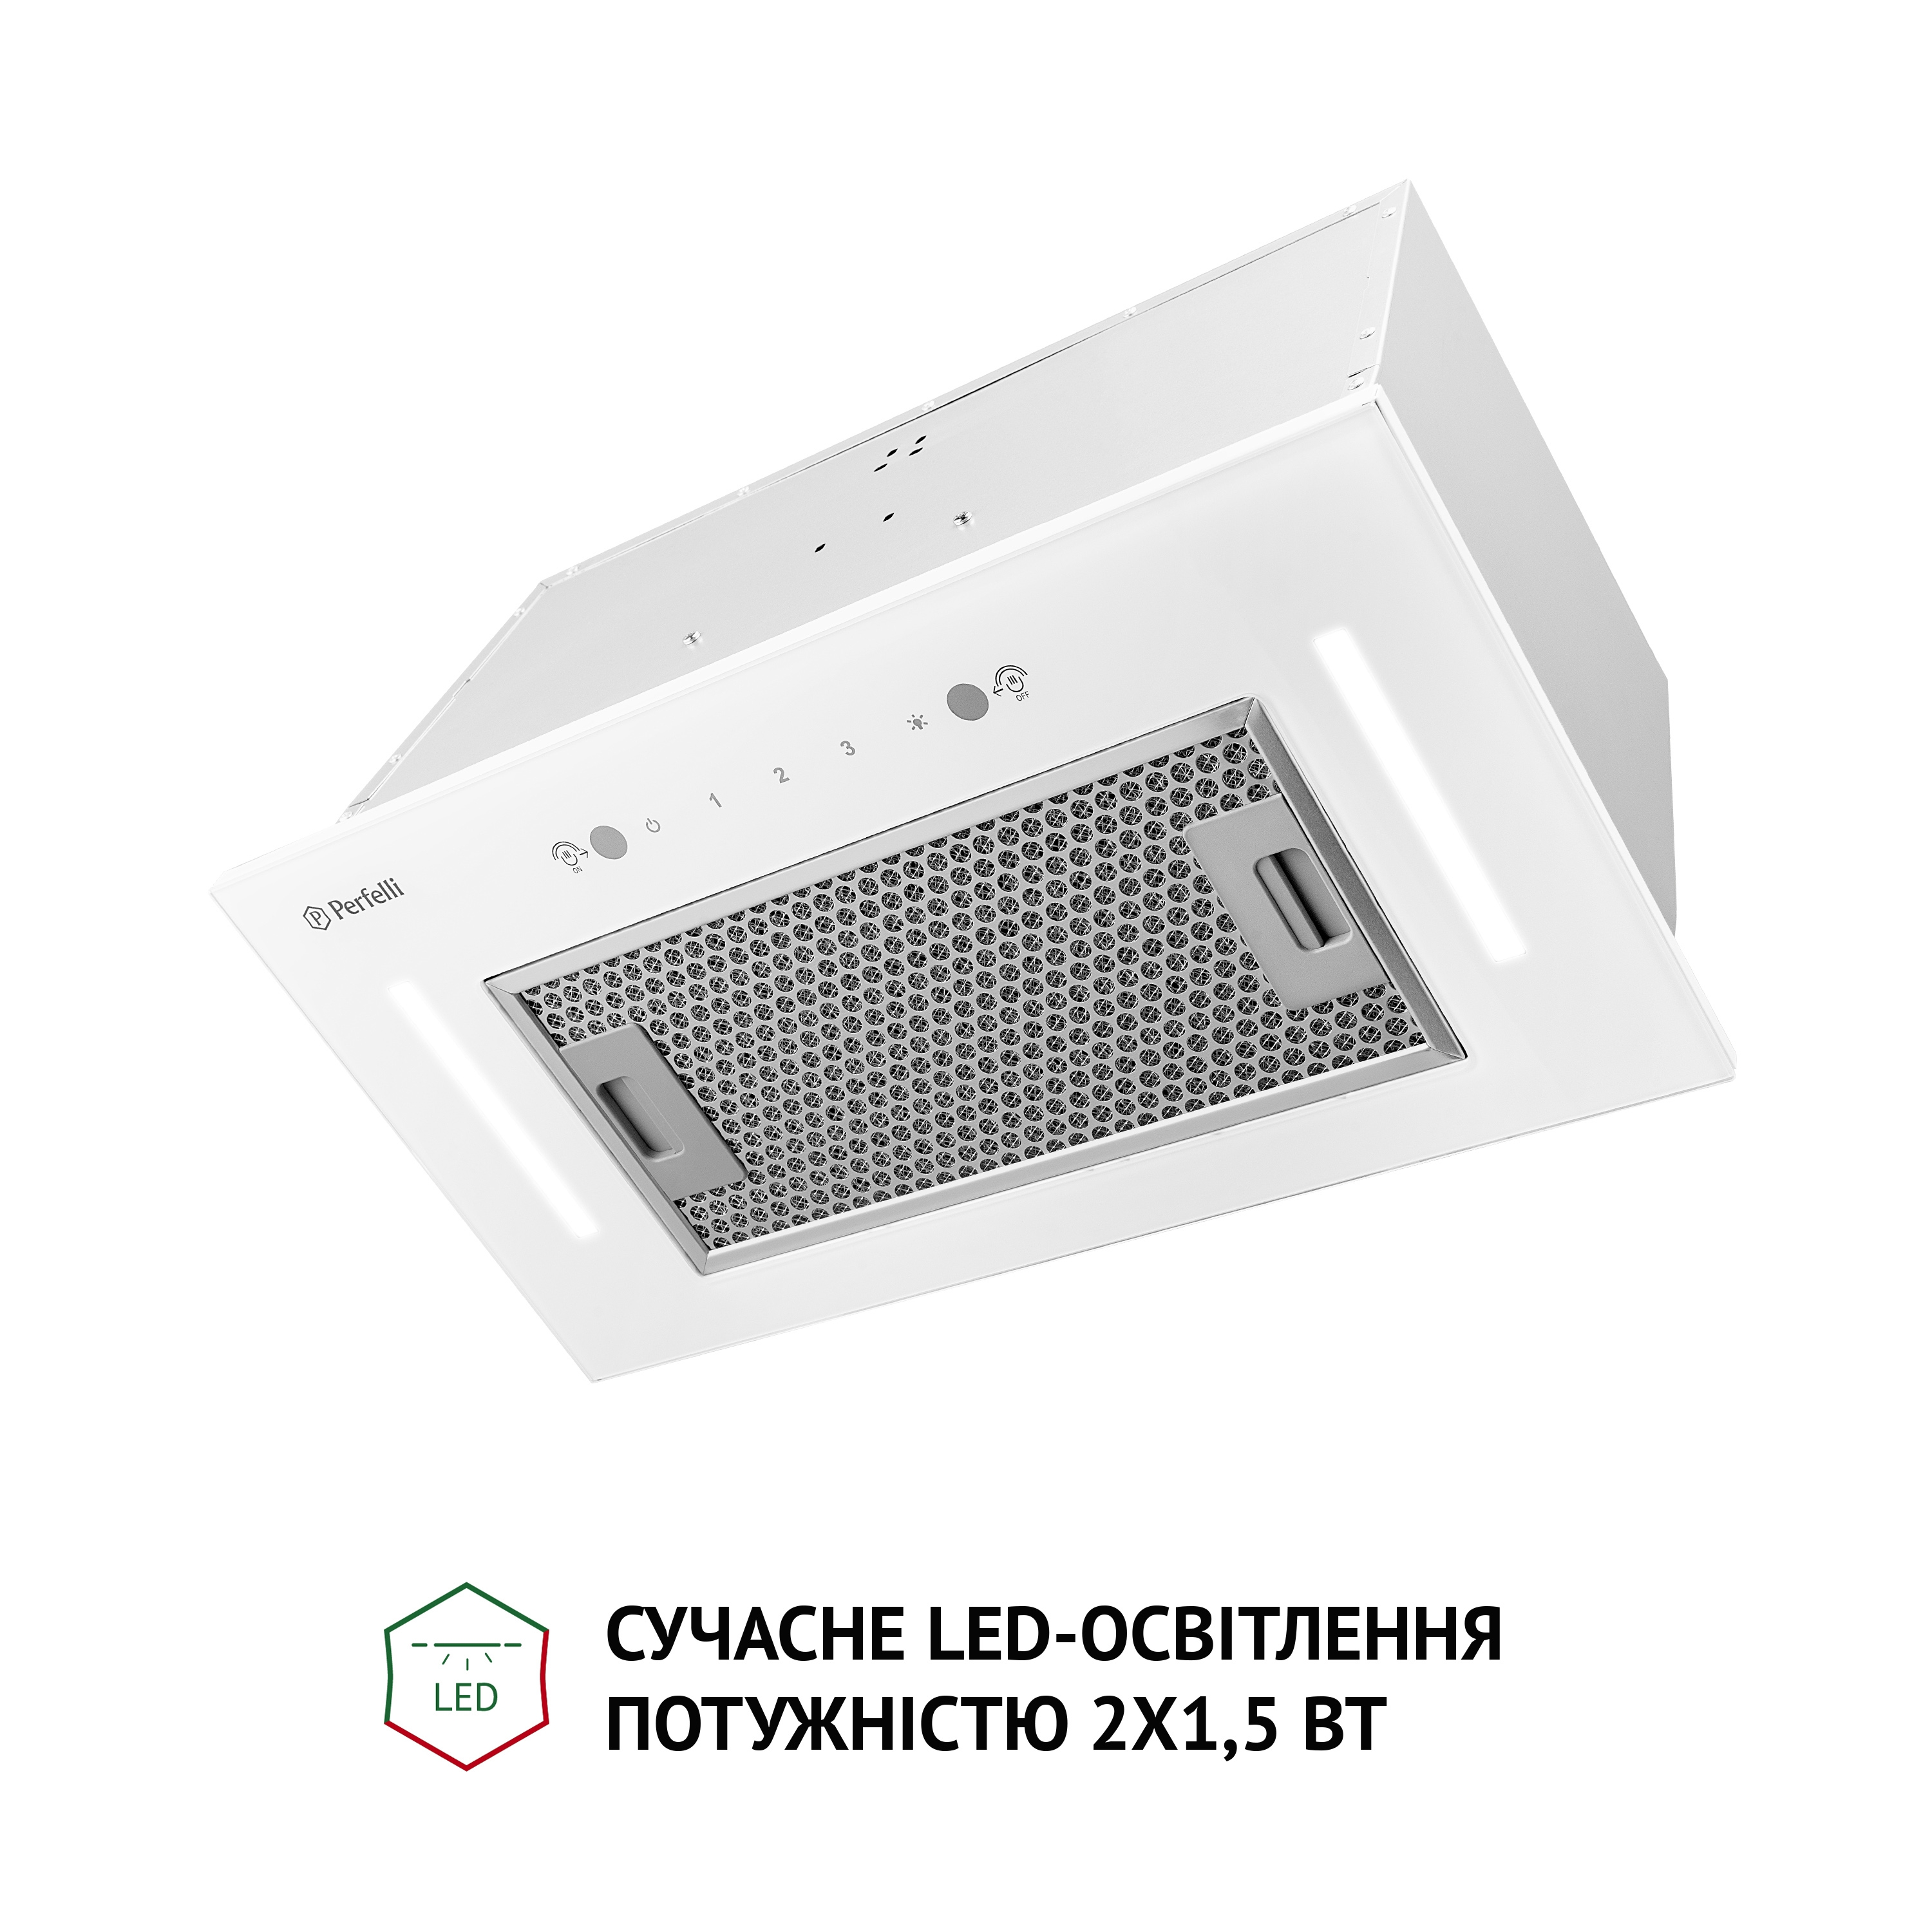 продаём Perfelli BIS 58844 WH 1200 LED в Украине - фото 4